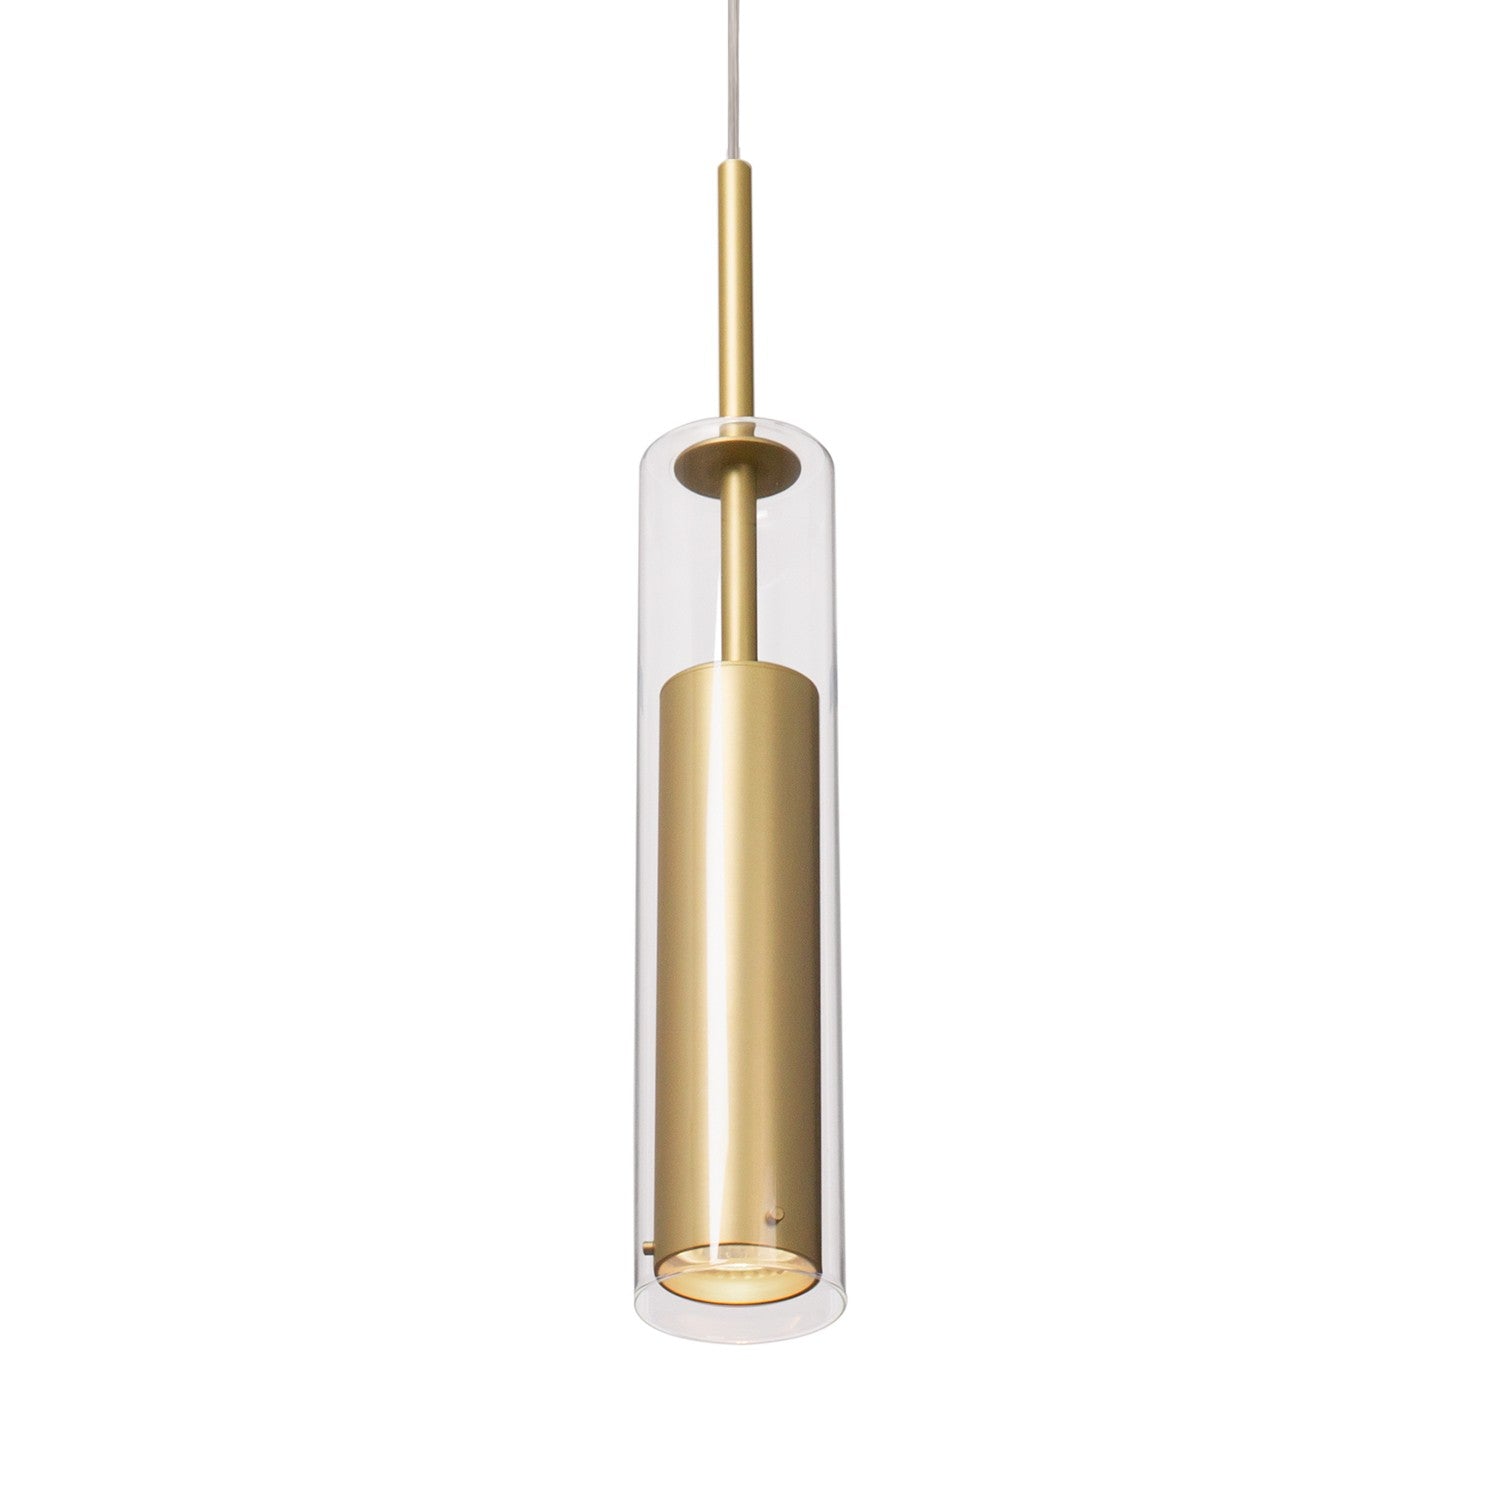 Kuzco Canada - One Light Pendant - Jarvis - Brushed Gold- Union Lighting Luminaires Decor